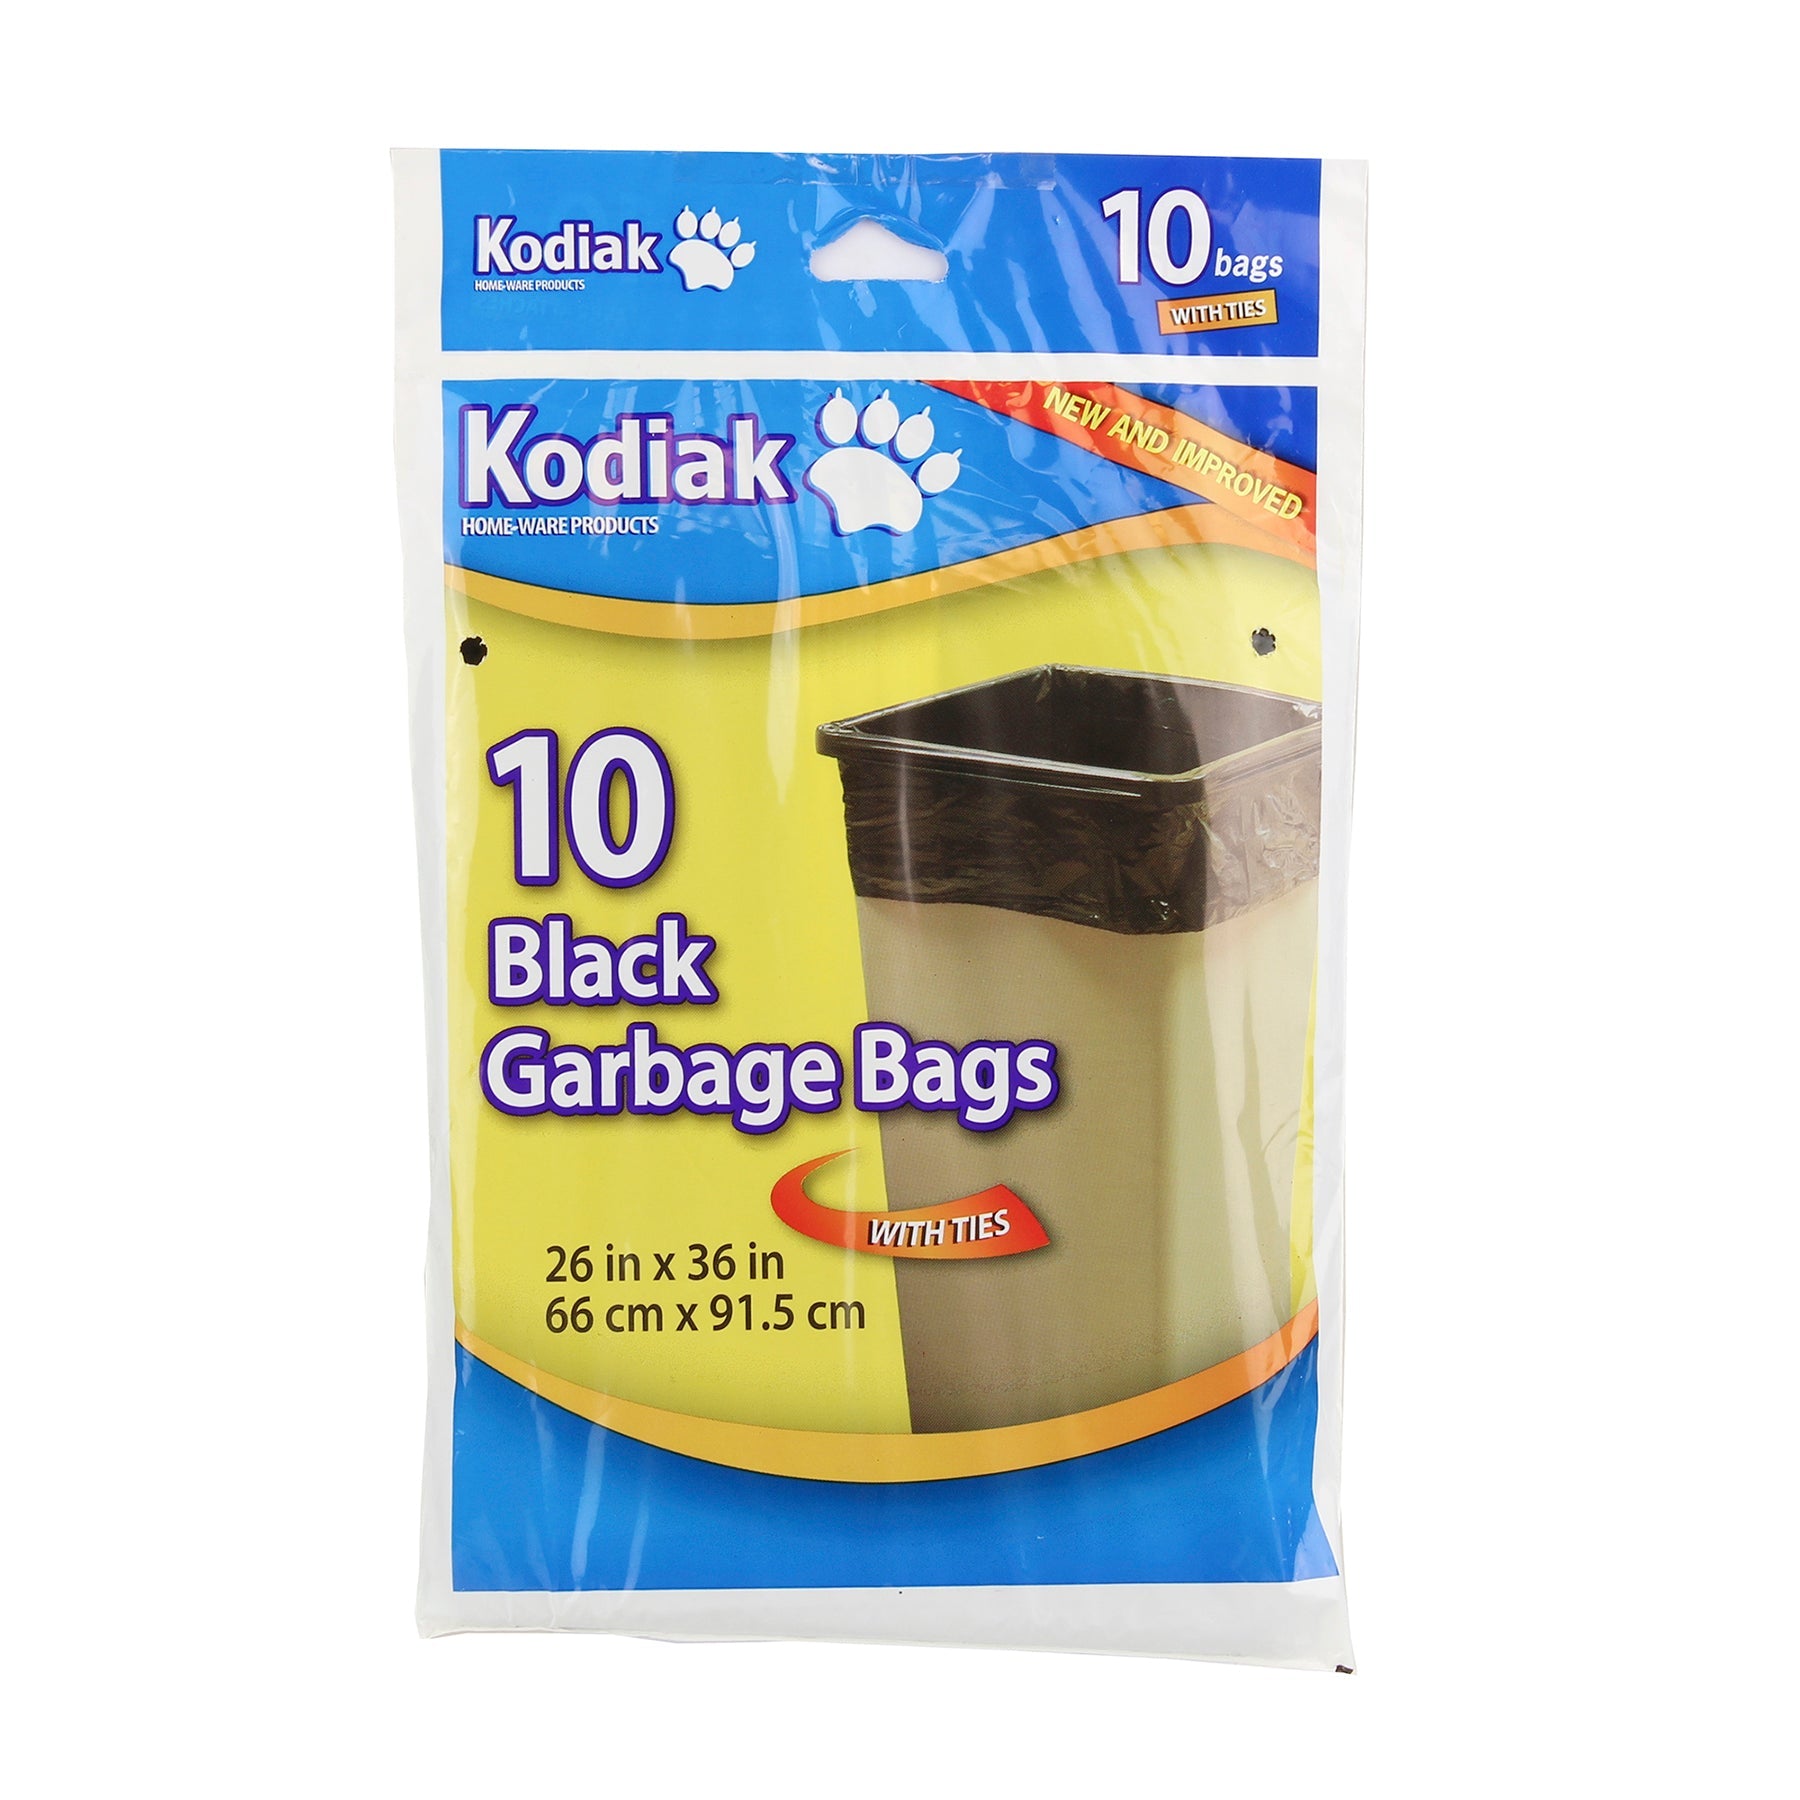 Kodiak 10 Garbage Bags with Ties Black Gauge 0.8mil 26x36in